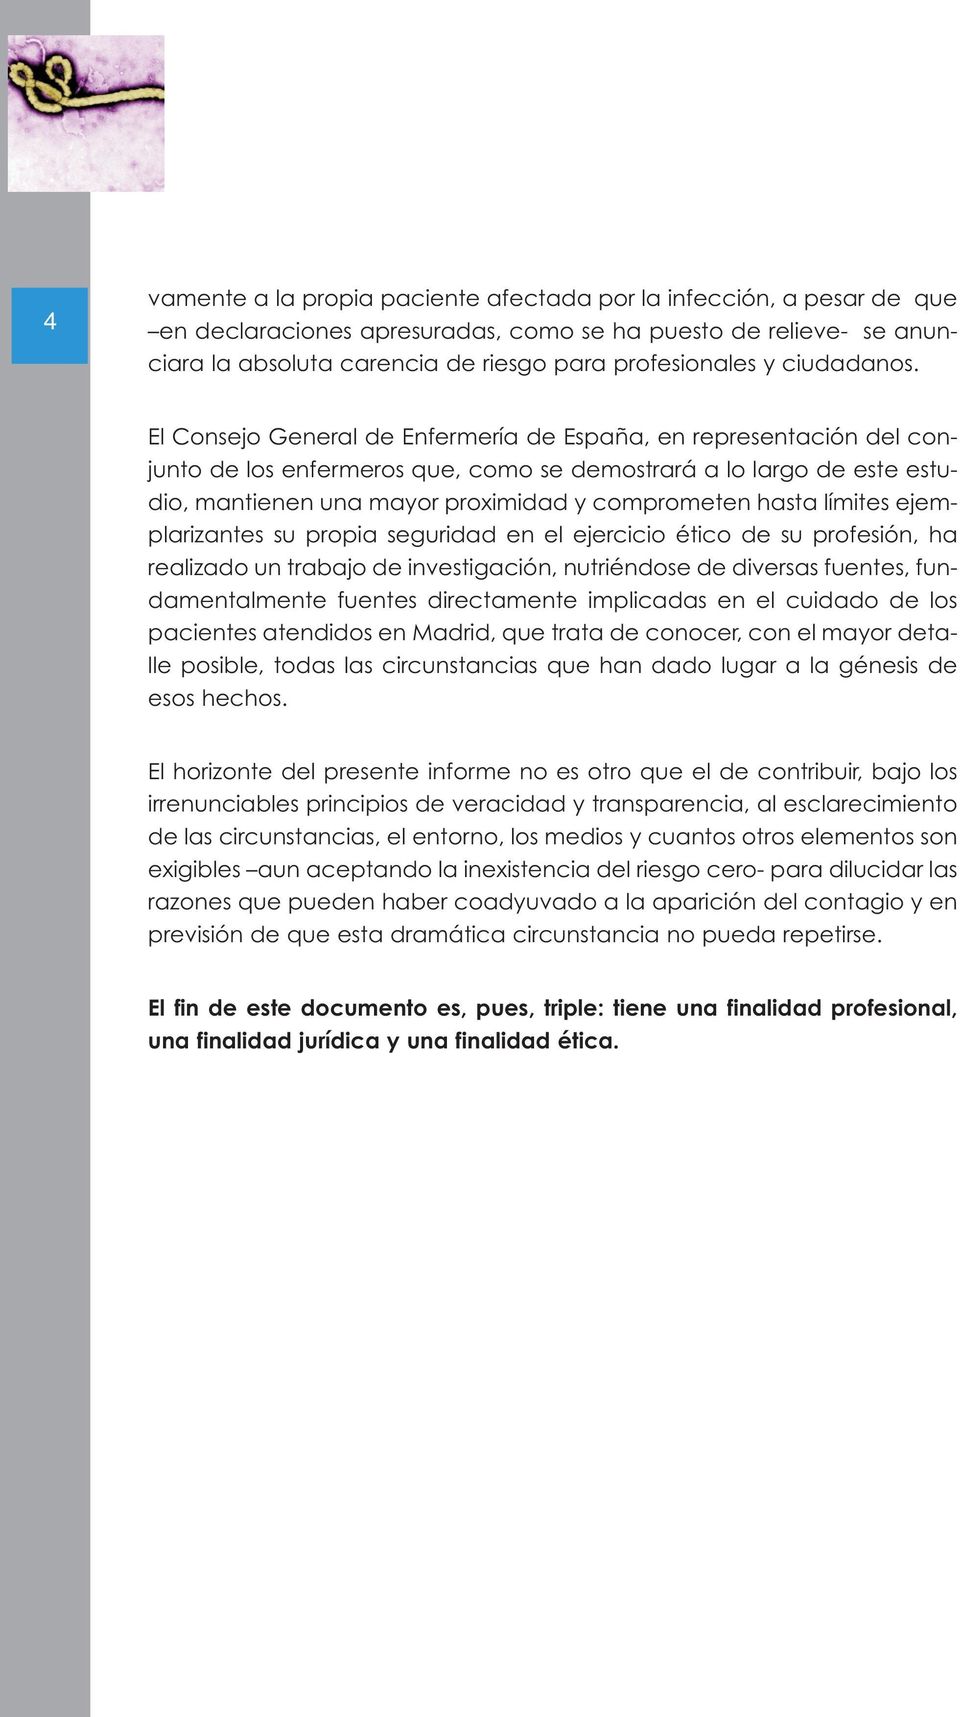 El Consejo General de Enfermería de España, en representación del conjunto de los enfermeros que, como se demostrará a lo largo de este estudio, mantienen una mayor proximidad y comprometen hasta